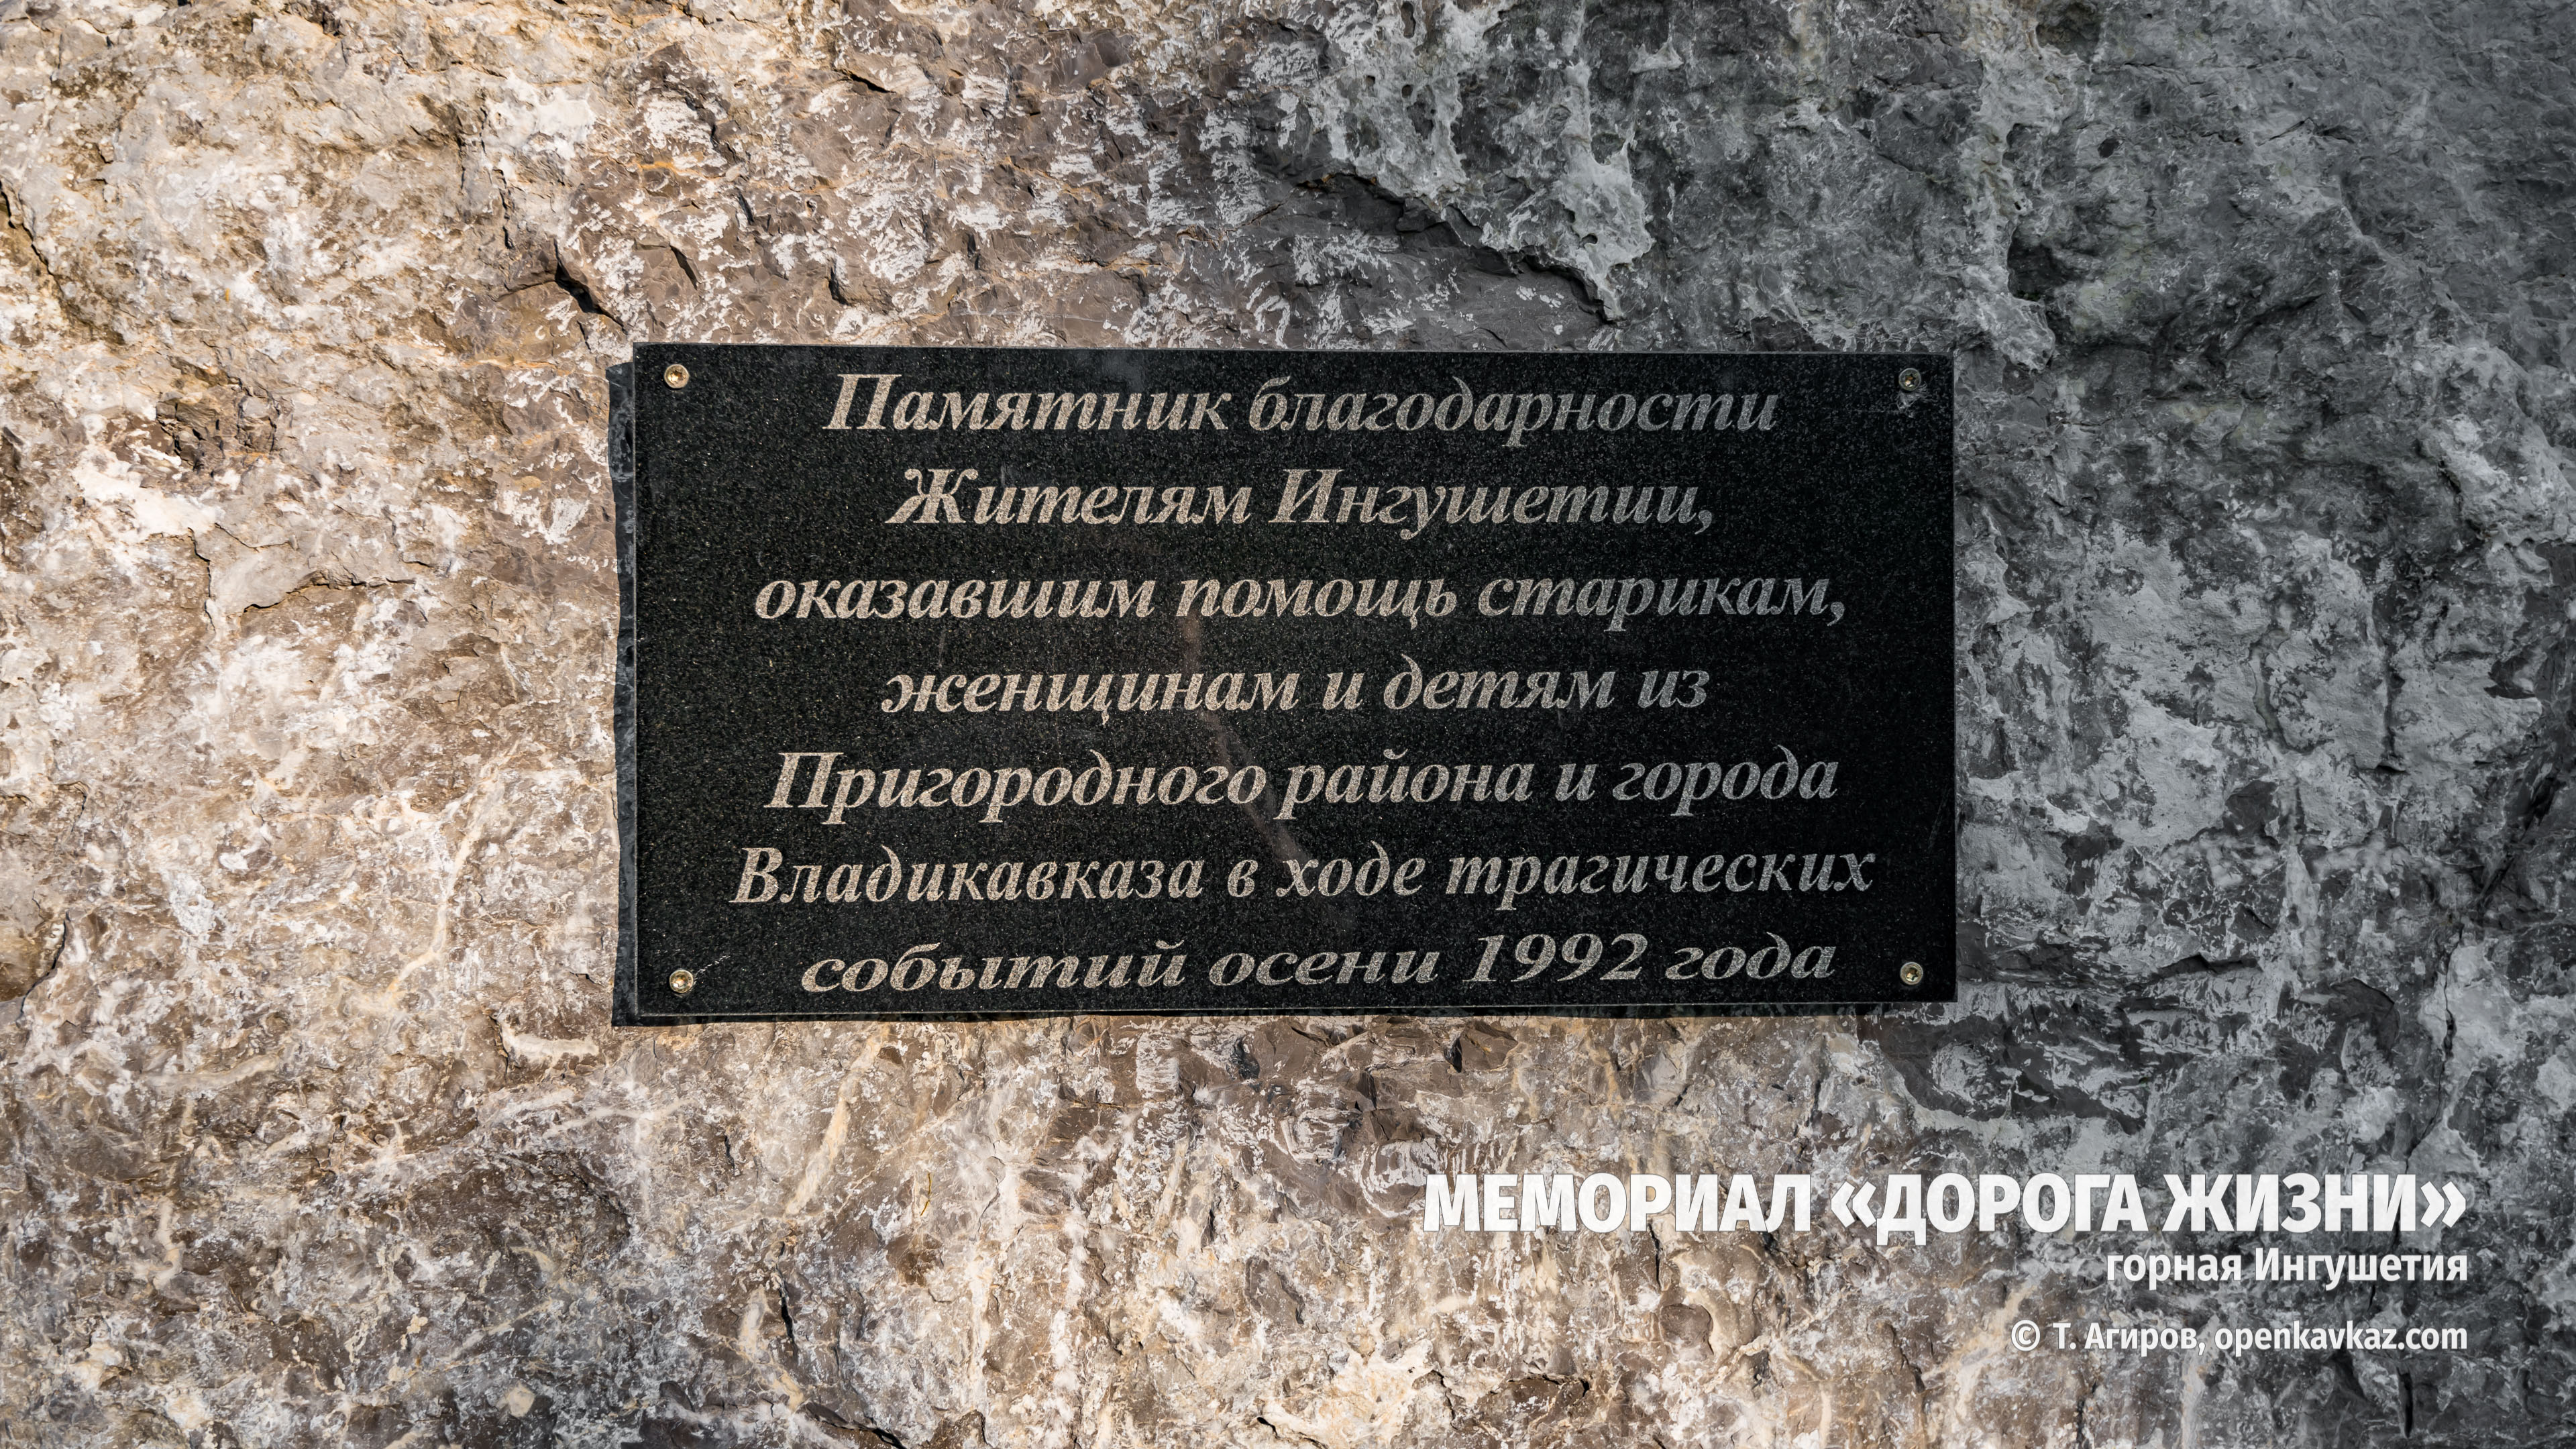 Мемориал "Дорога жизни", Ингушетия